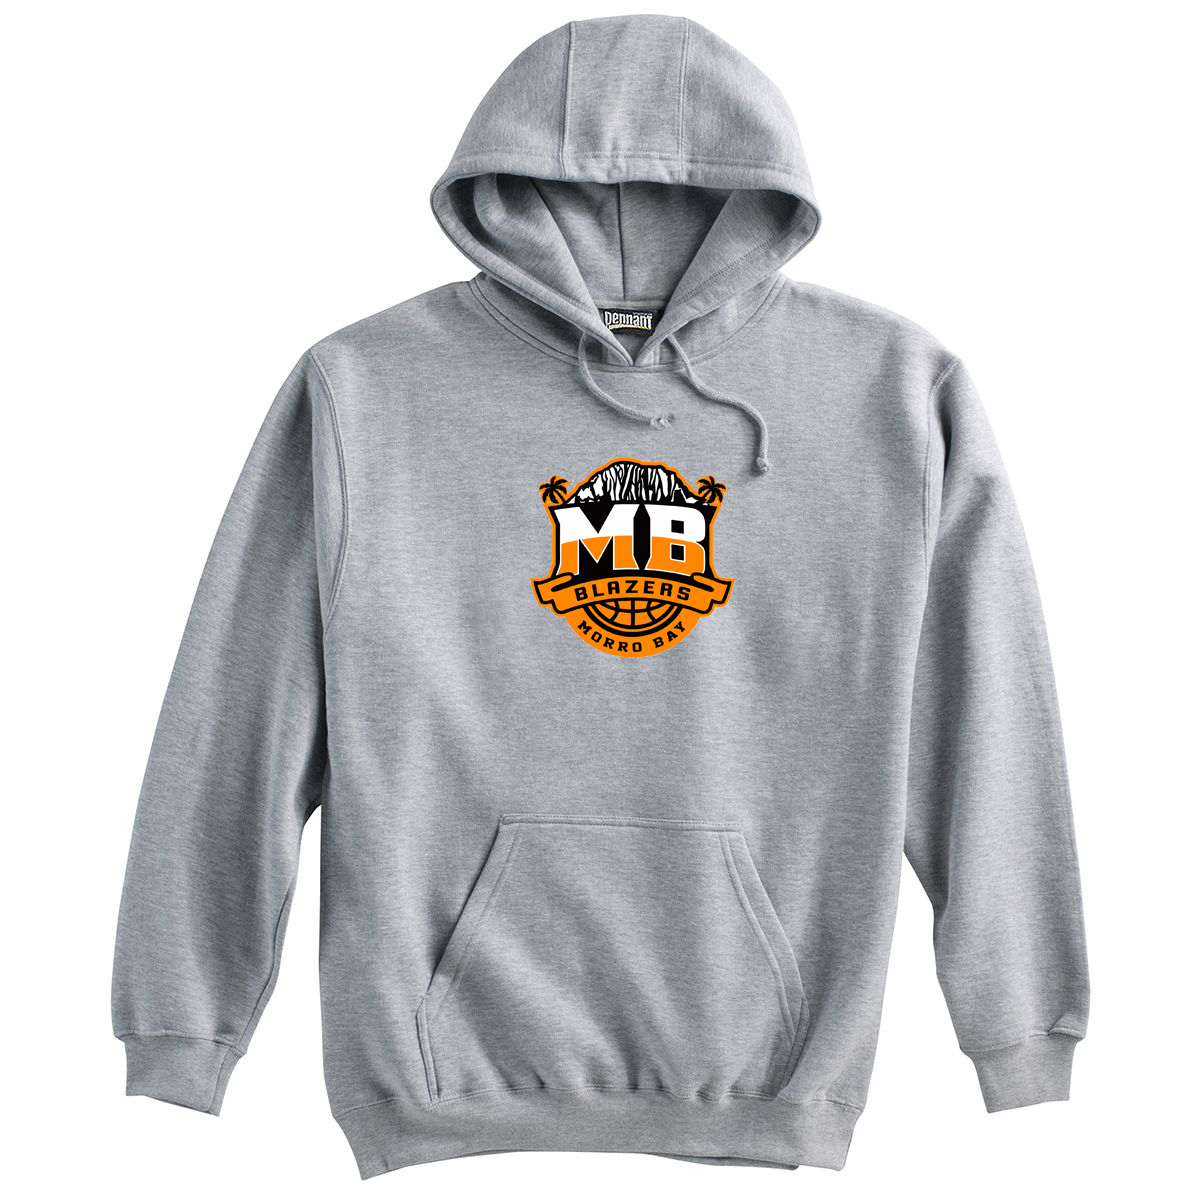 MB Blazers Sweatshirt